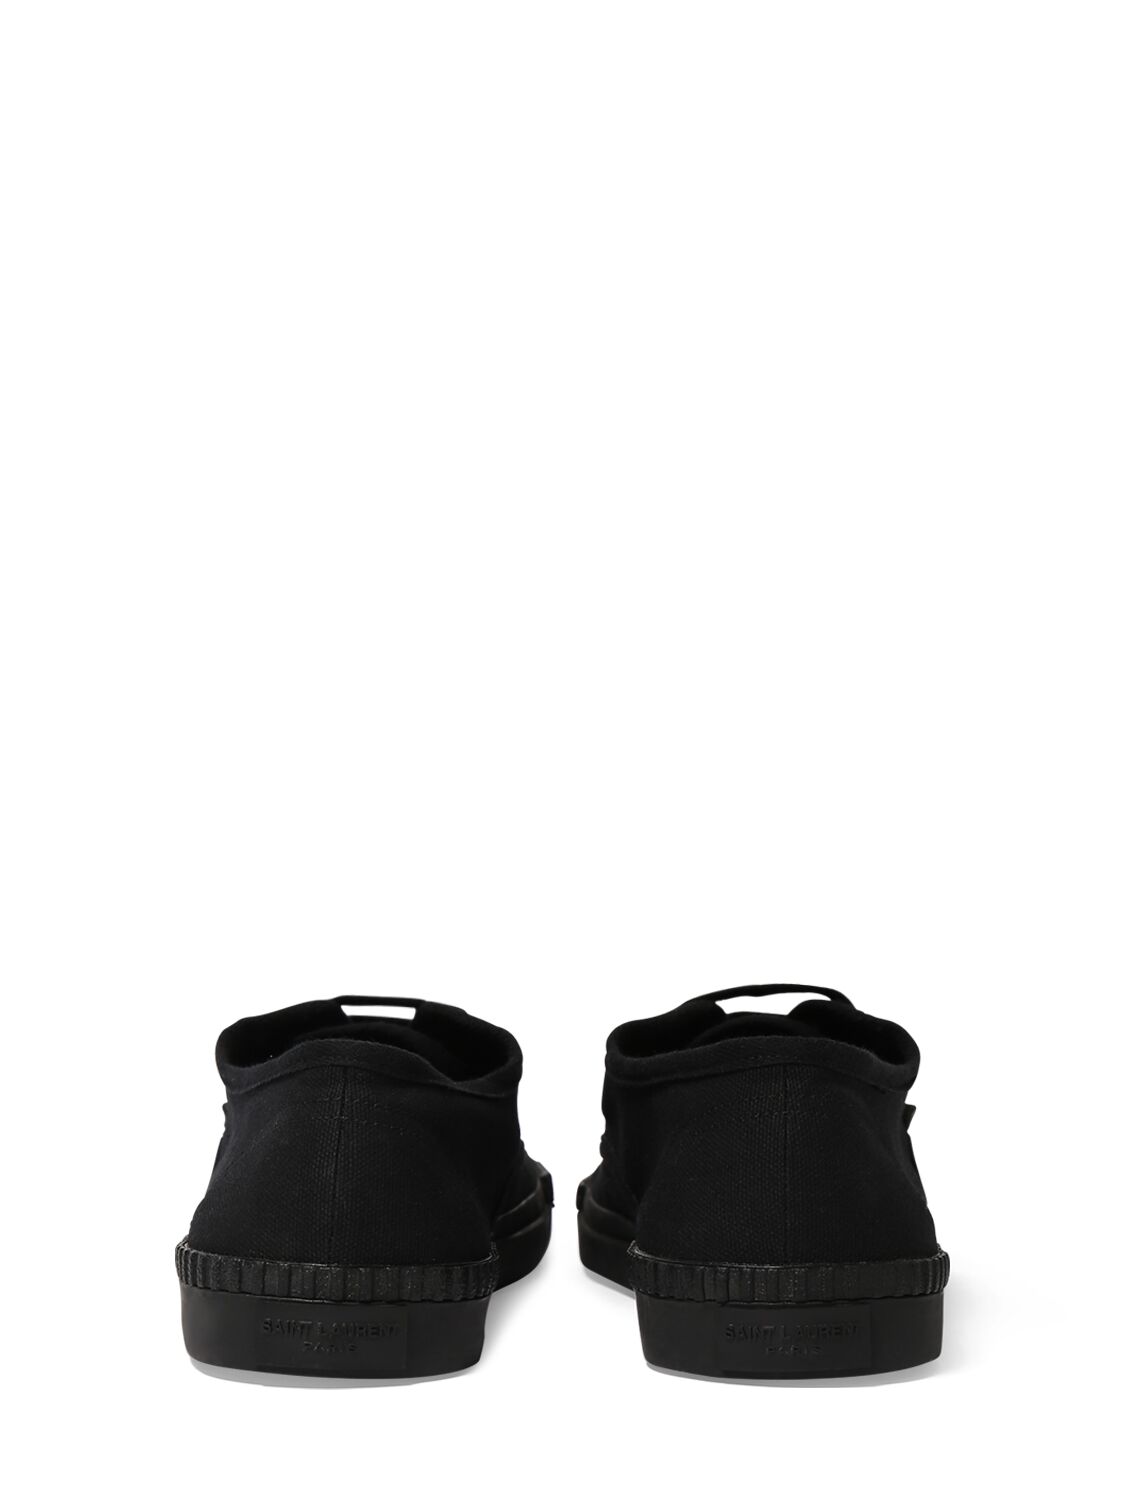 Shop Saint Laurent Wes Canvas Sneakers In Black